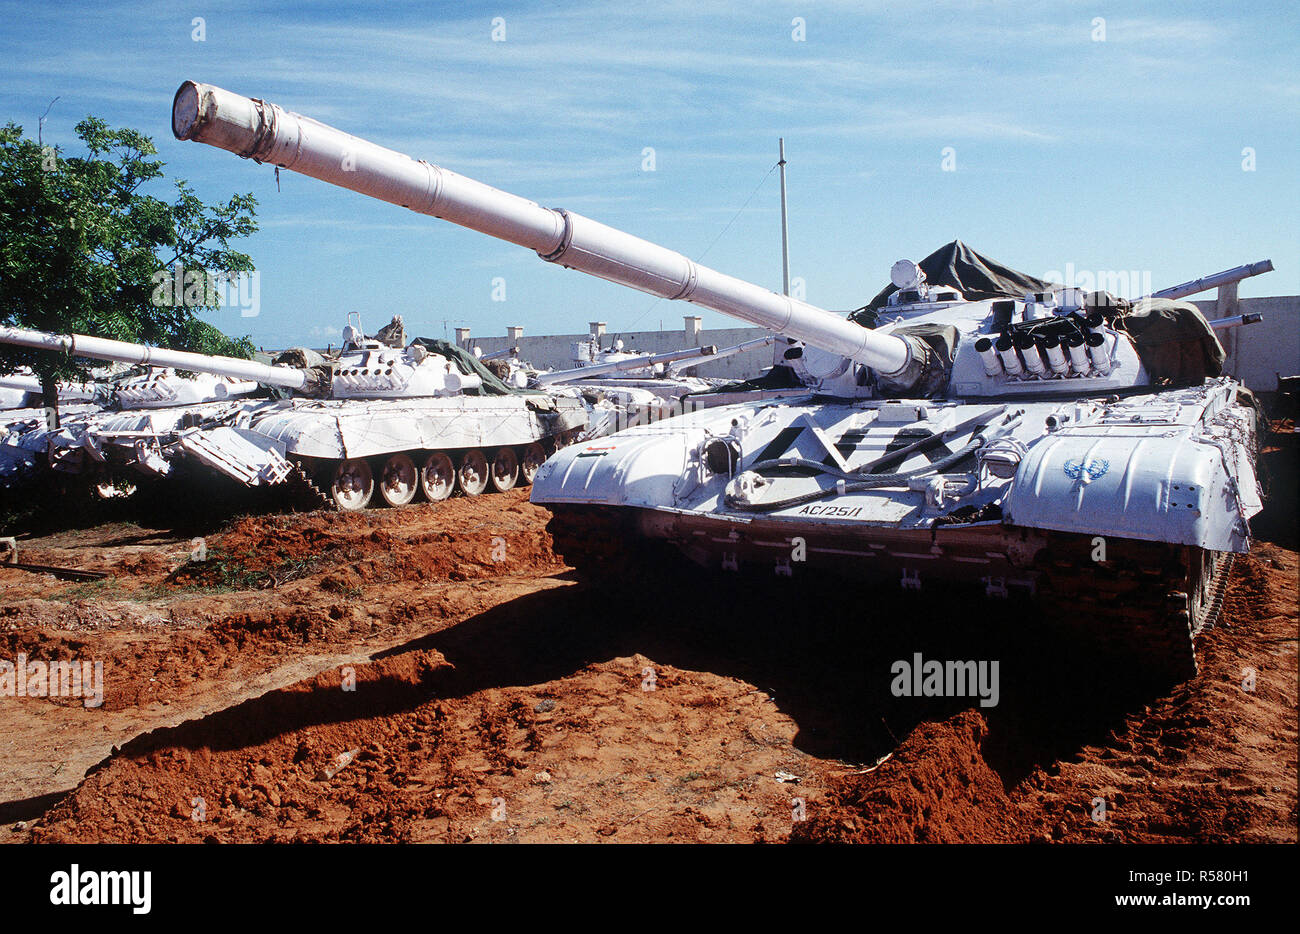 1993 - die Vereinten Nationen Tanks an der Belgischen Compound in Kismayo, Somalia. Die UN-Truppen sind in Somalia zur Unterstützung der Operation weiterhin Hoffnung. Vorderansicht eines T-72 Kampfpanzer mit UN-Kennzeichnung. Stockfoto